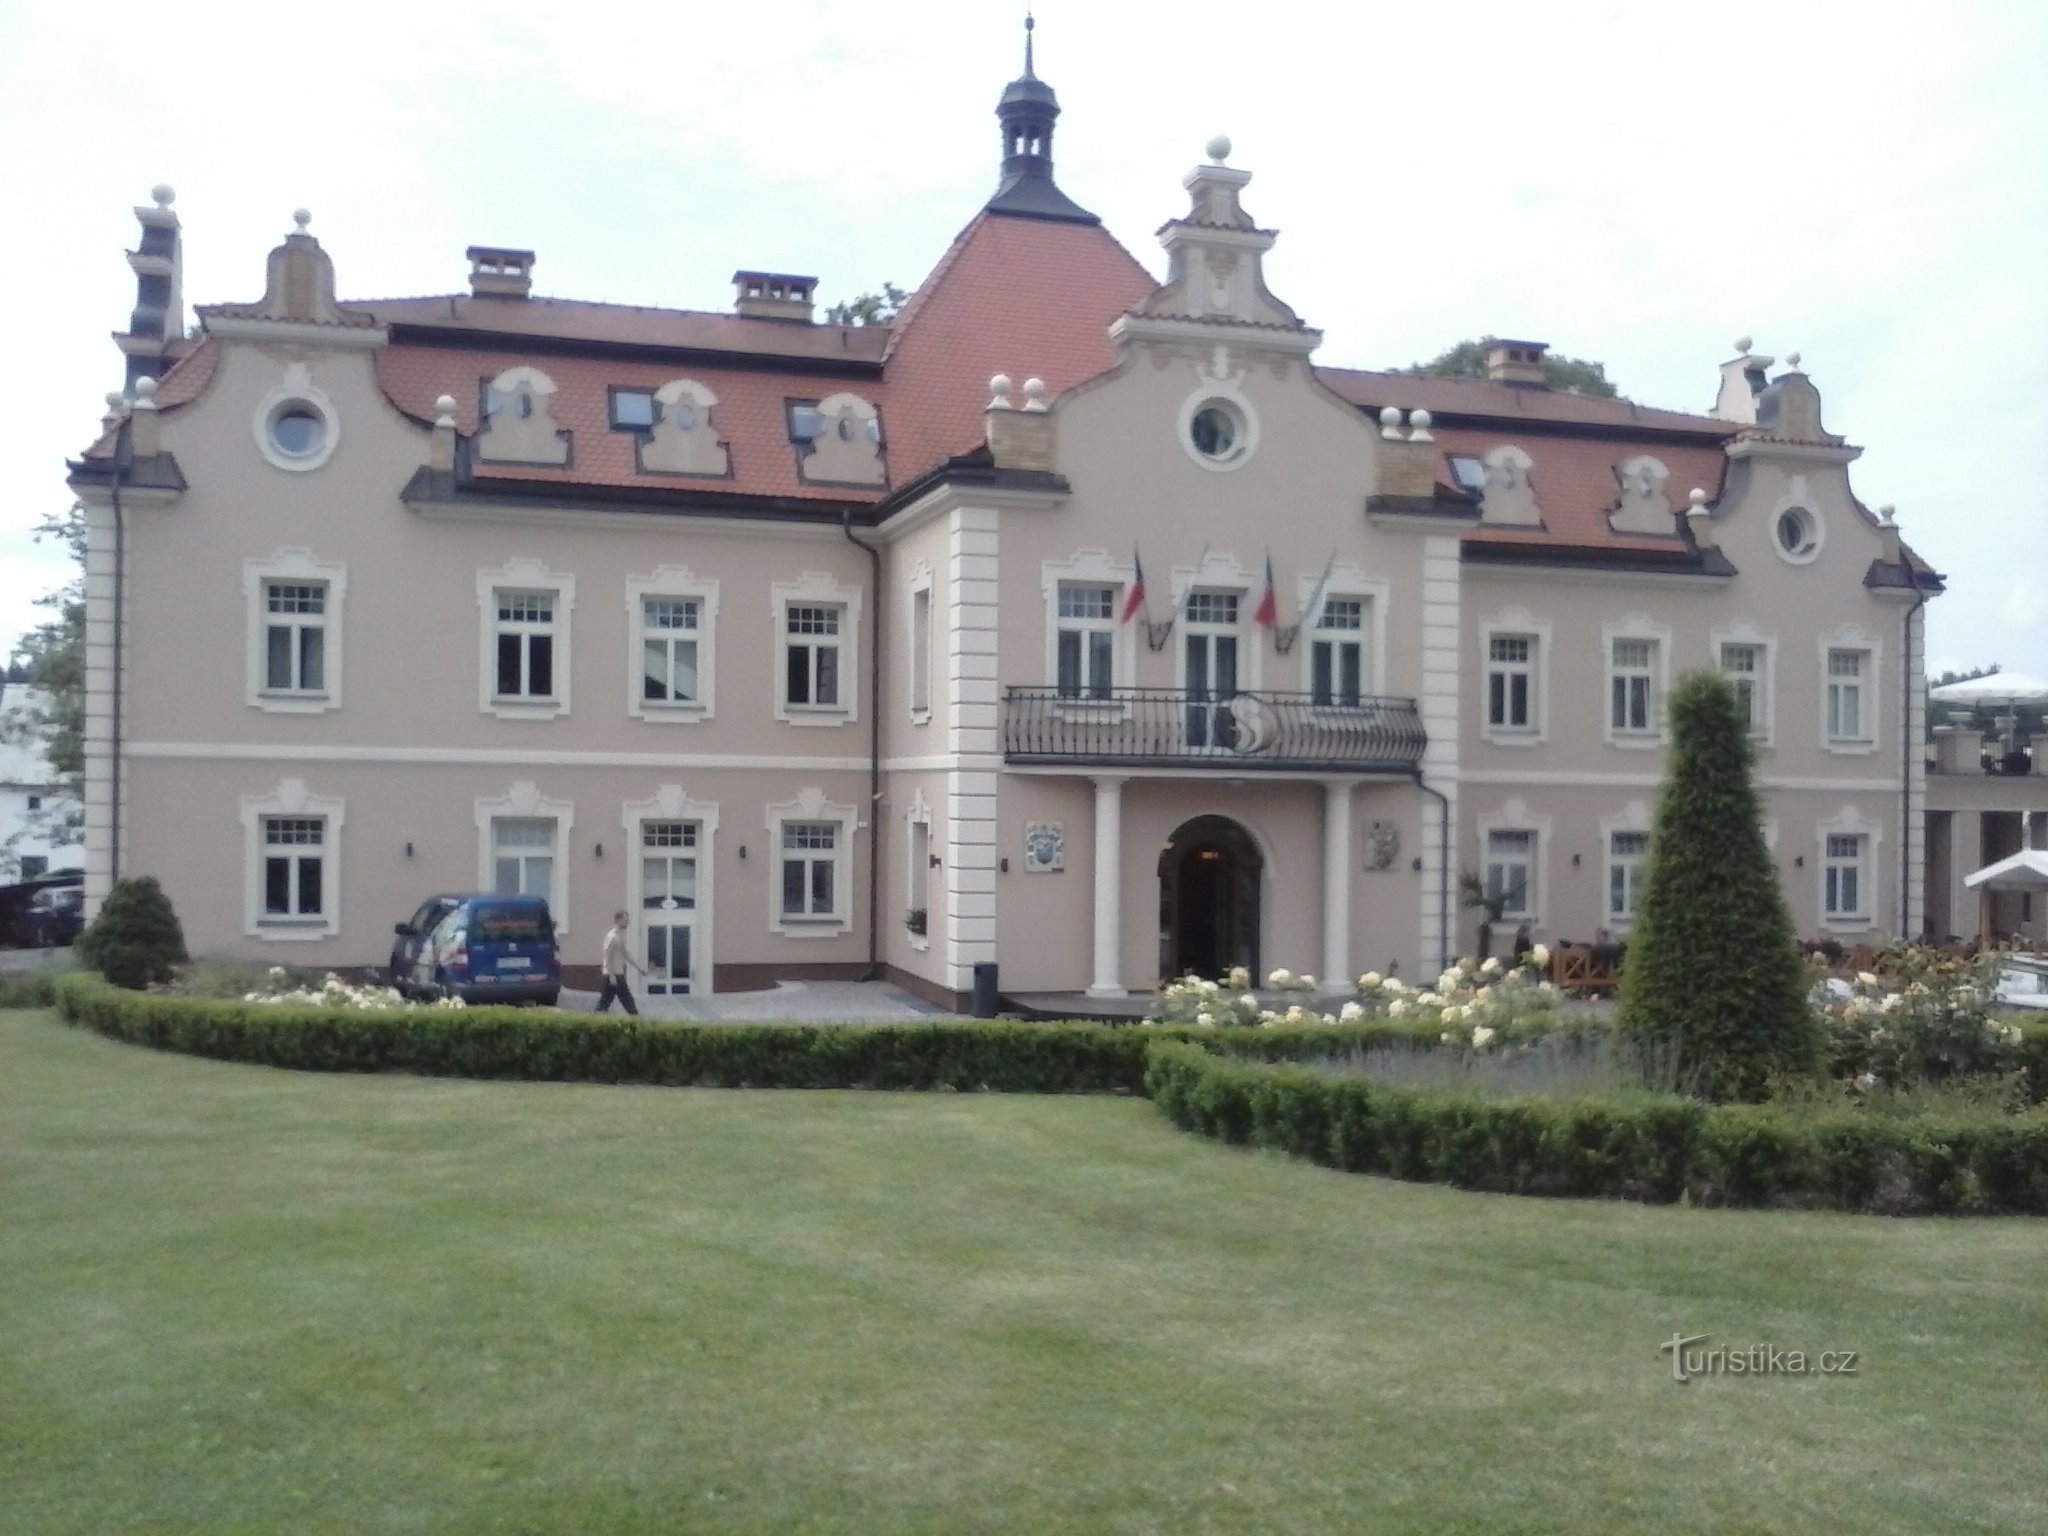 Det nuvarande slottet Berchtold